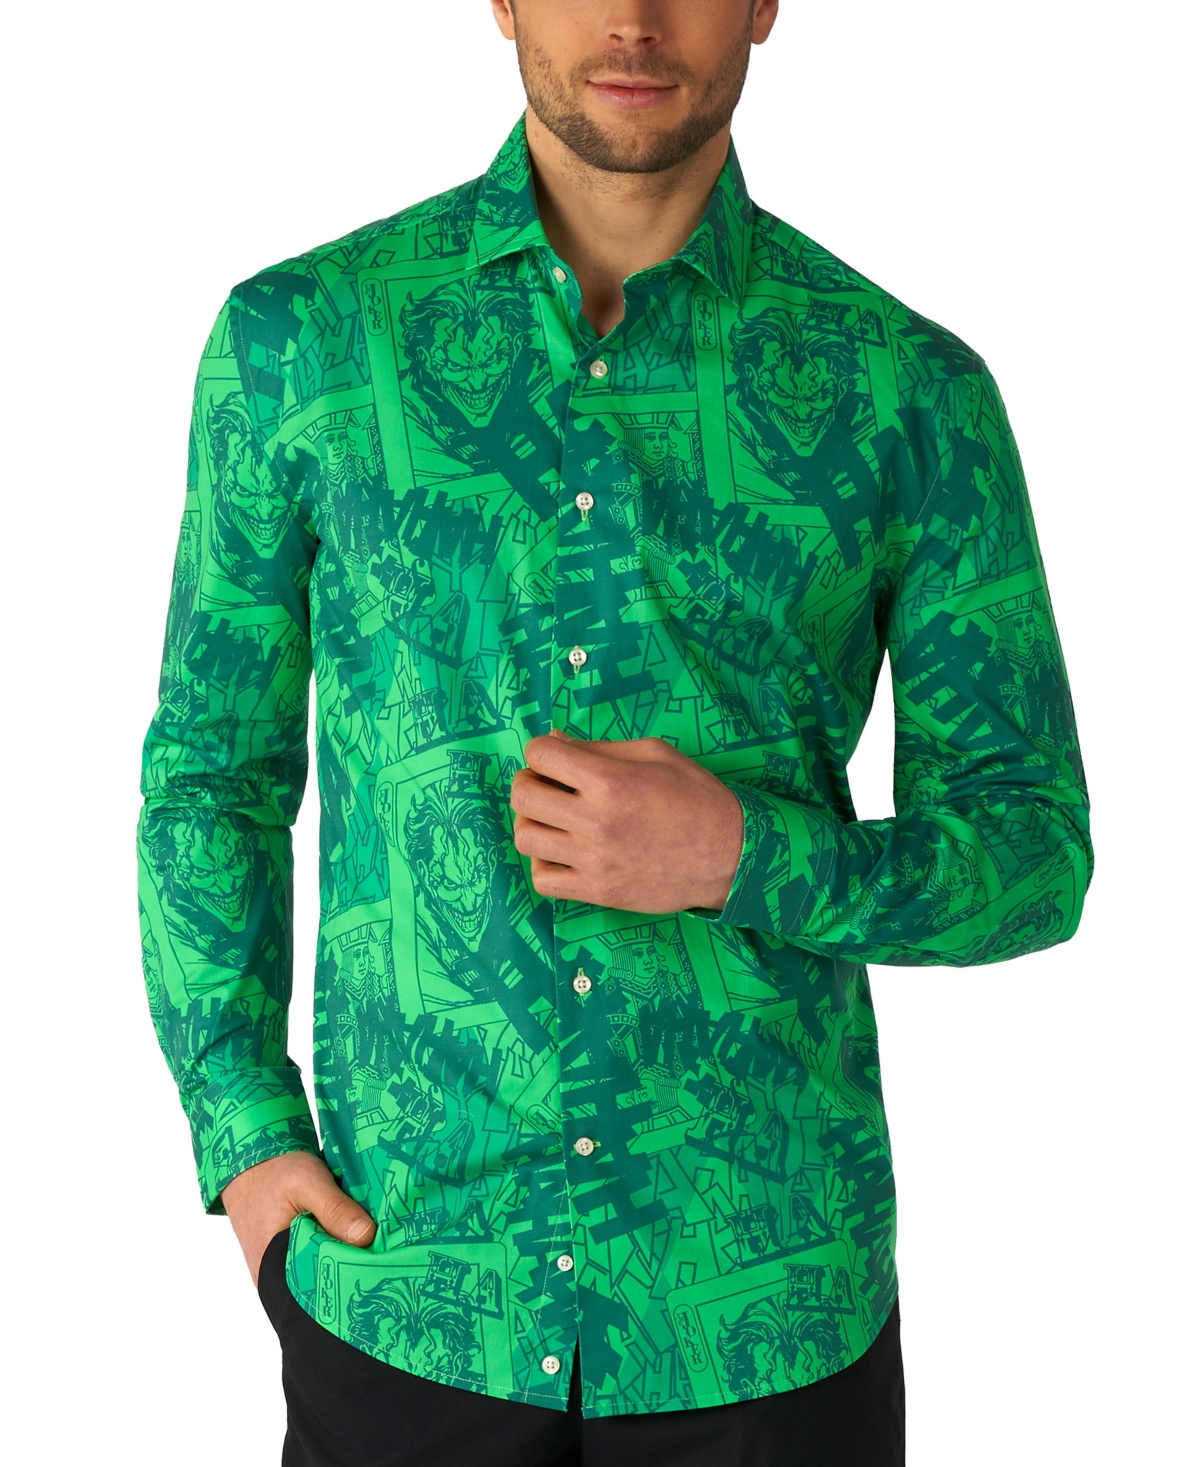 Men's Long-Sleeve Joker Graphic Shirt - Green